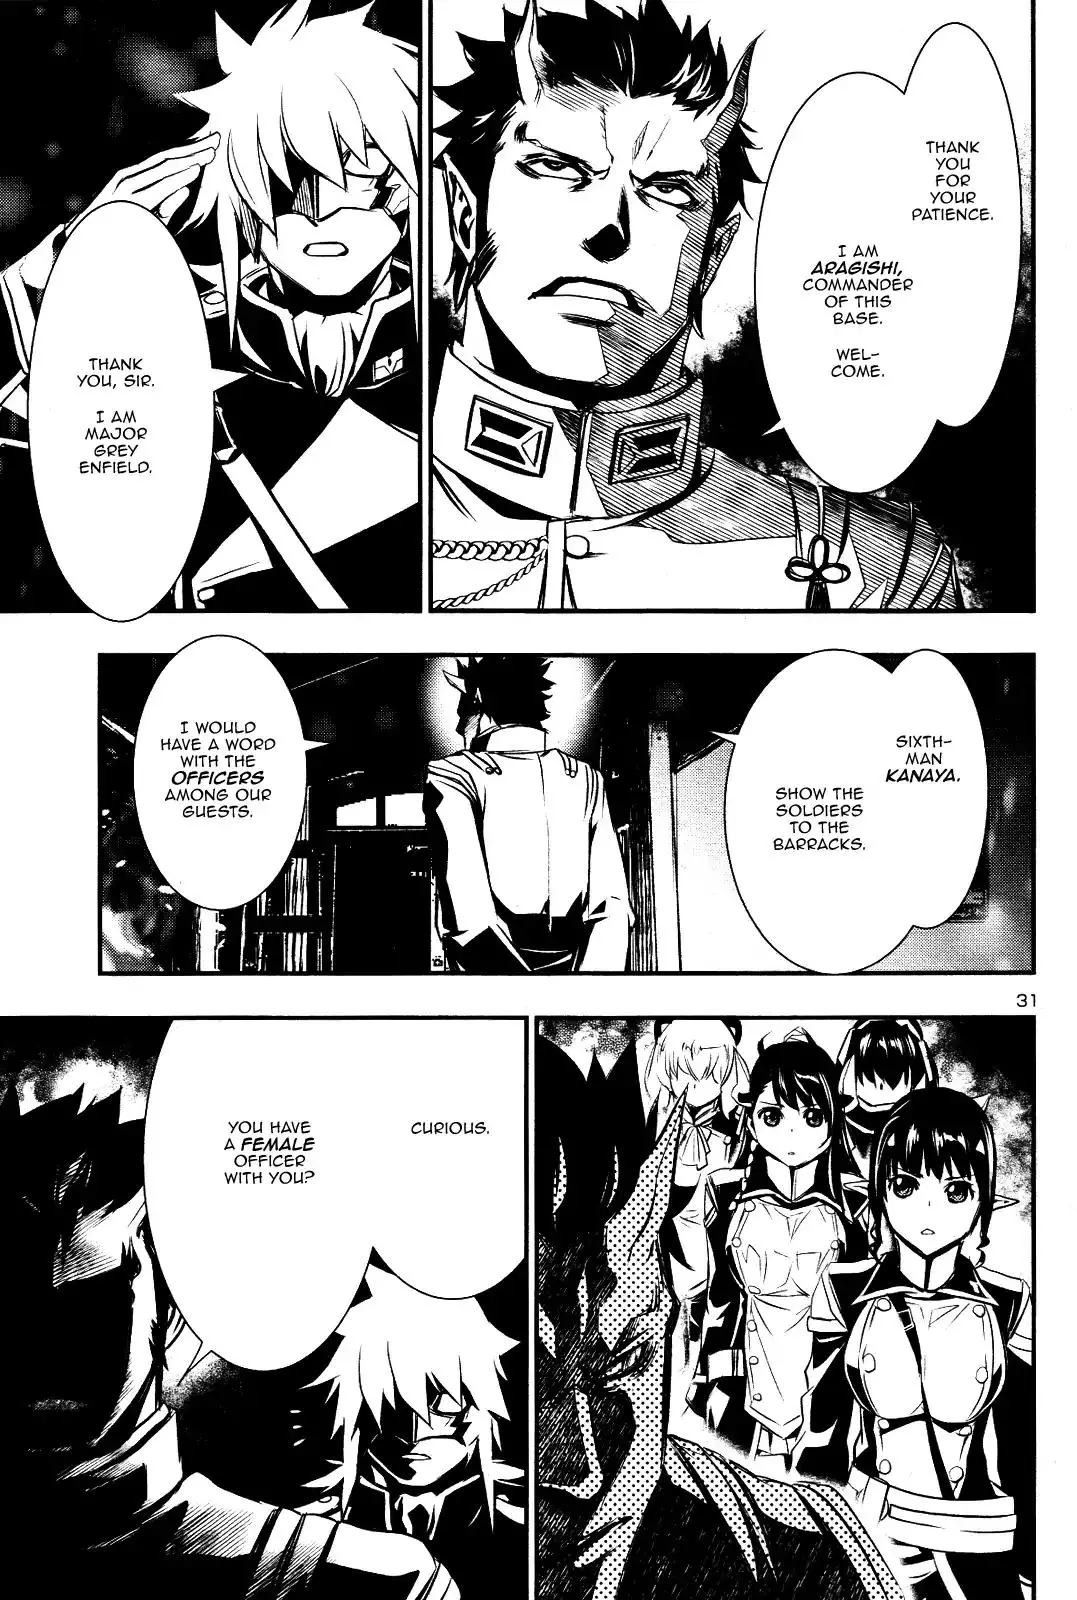 Shinju no Nectar - 22 page 29